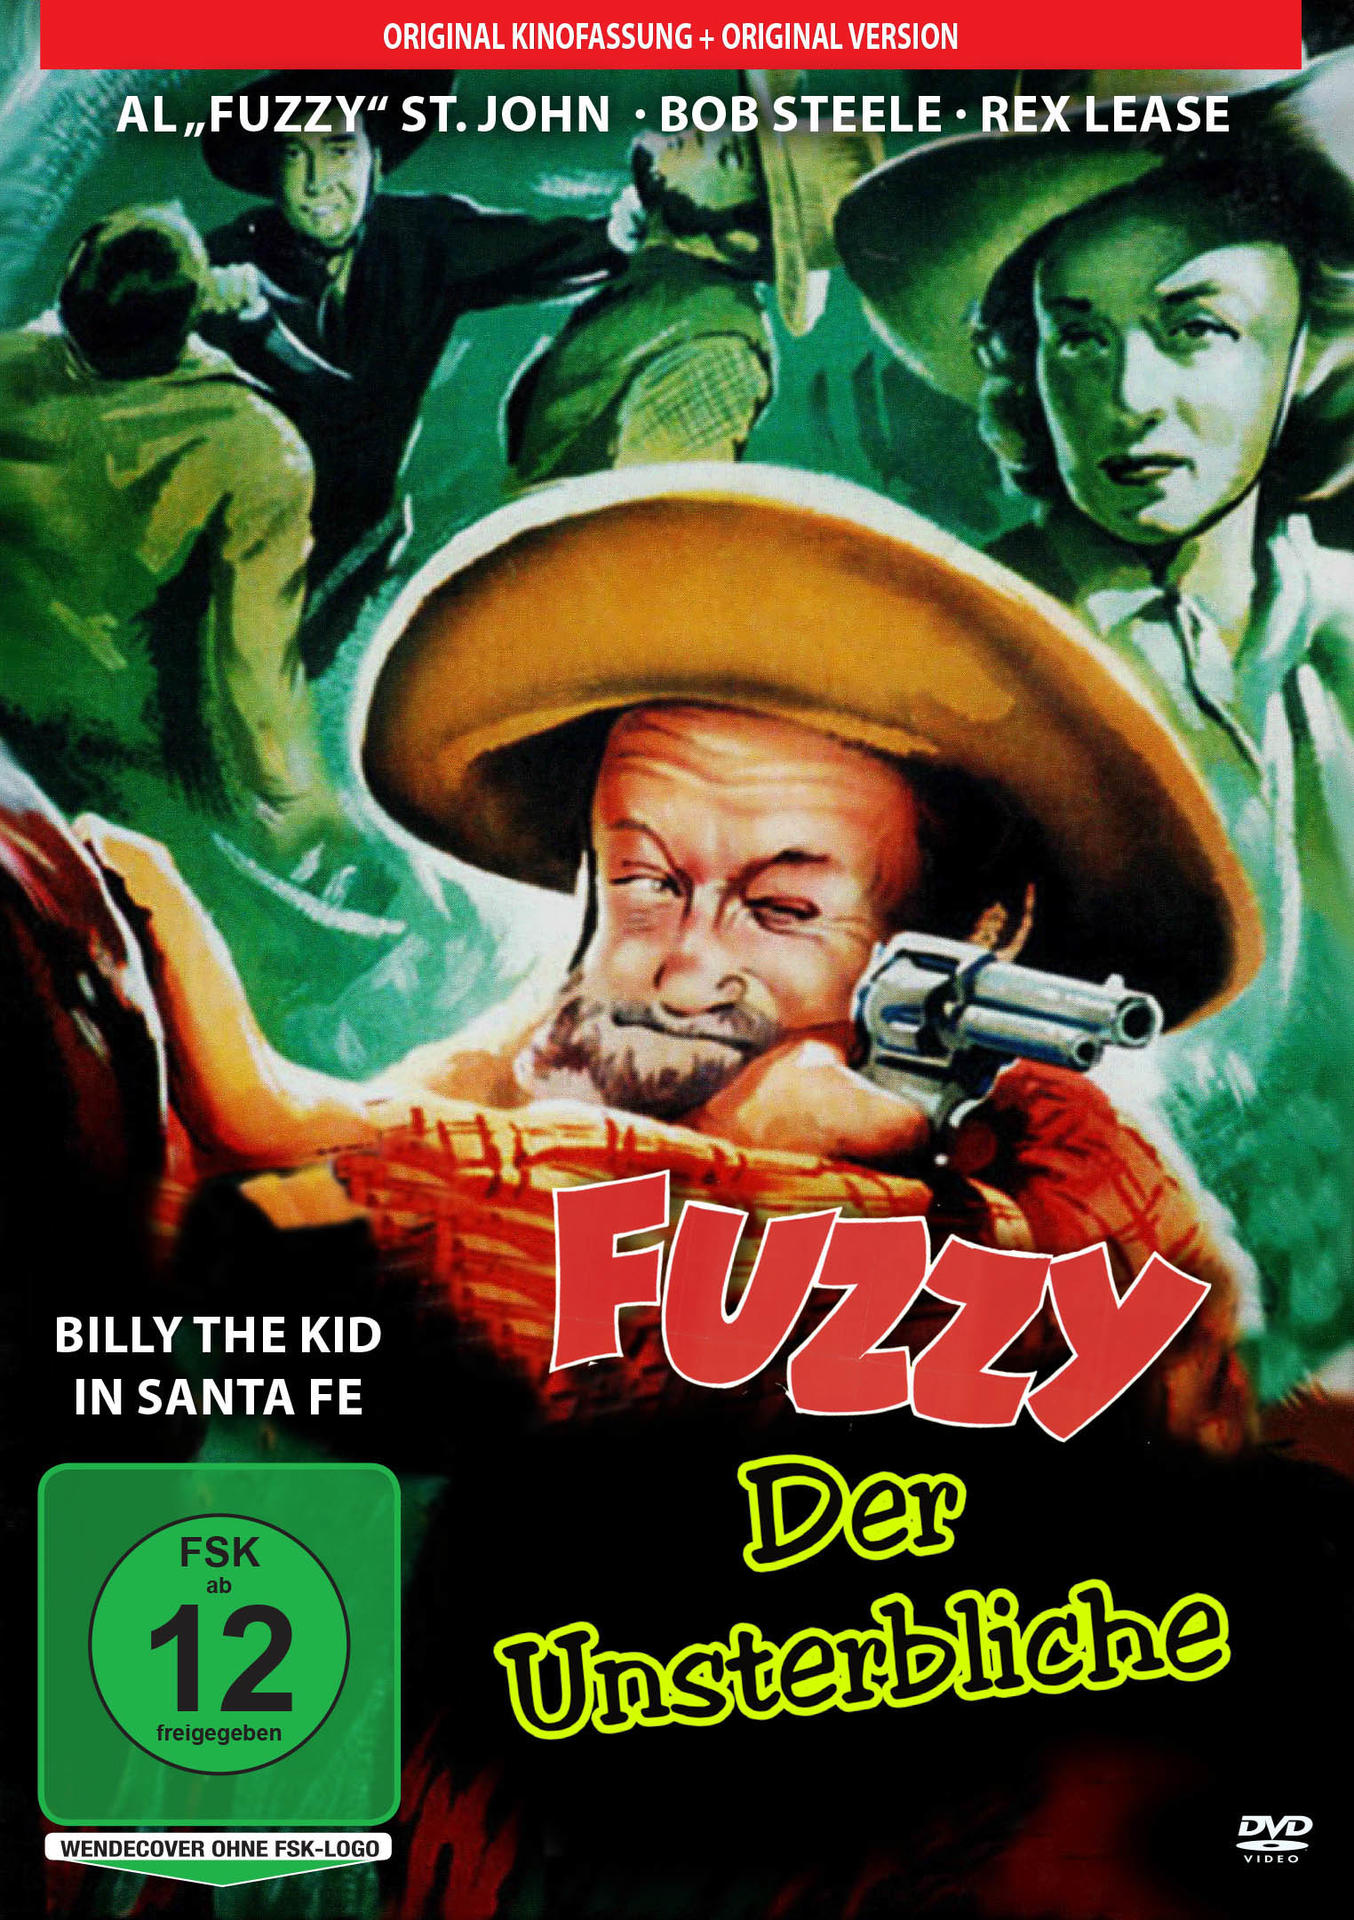 Fuzzy DVD Der Fuzzy, Vol.5 Edition Unsterbliche -